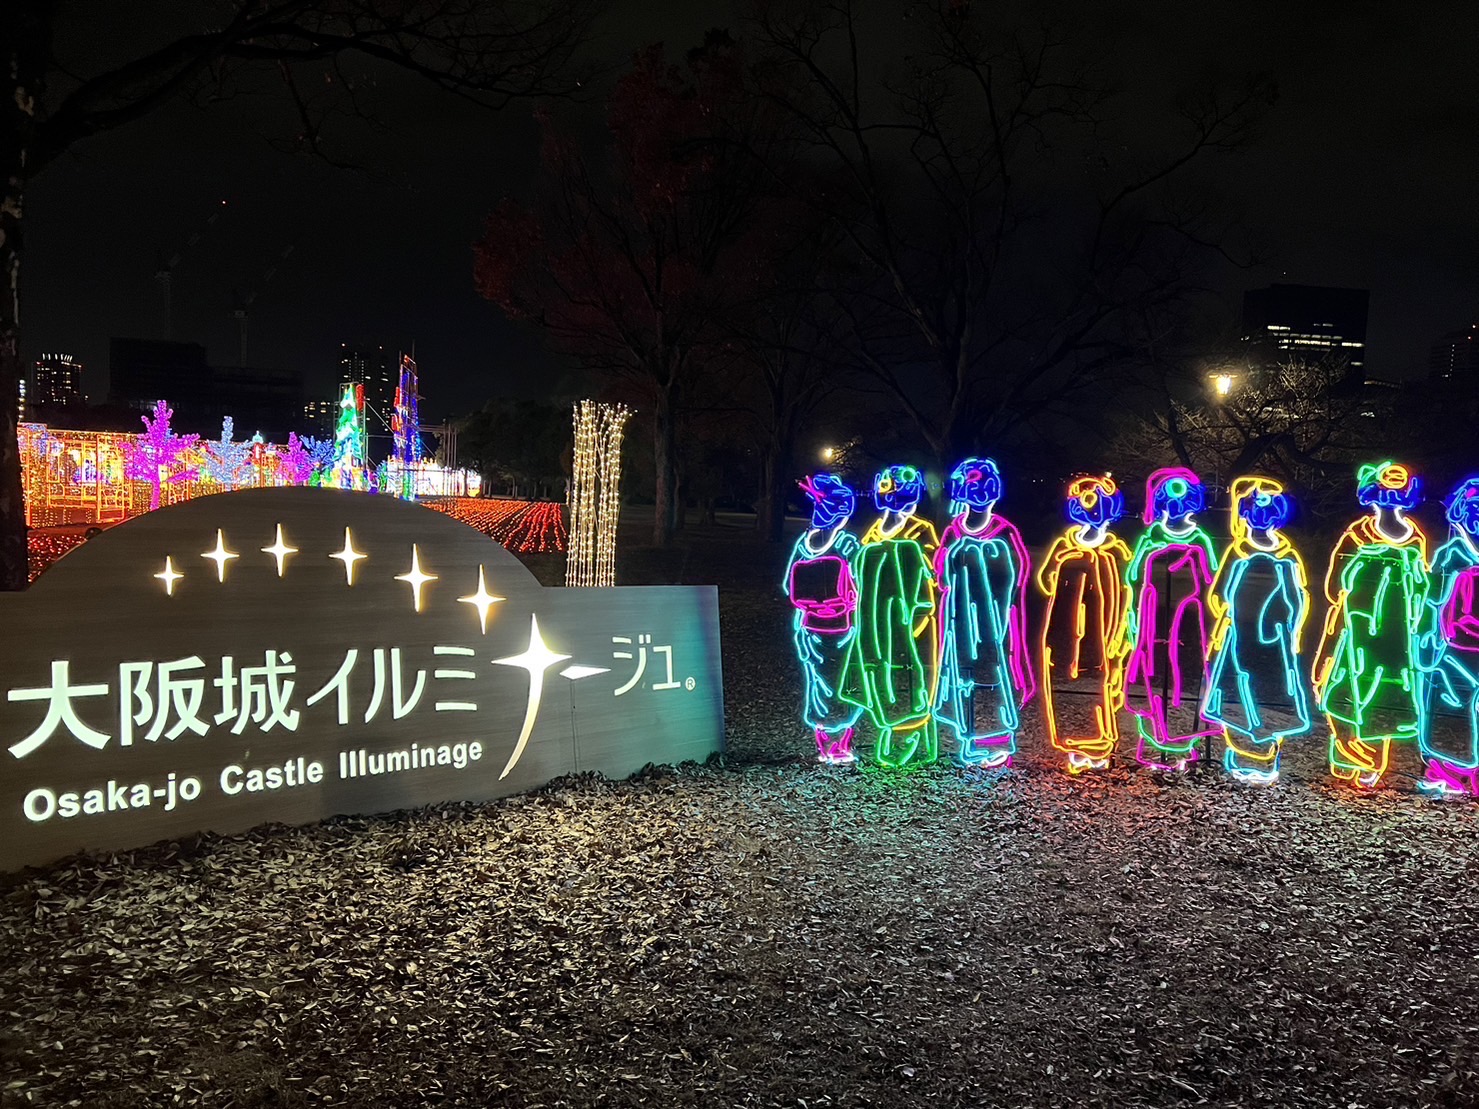 Osaka Castle Illuminage  *LIMITED Time Event